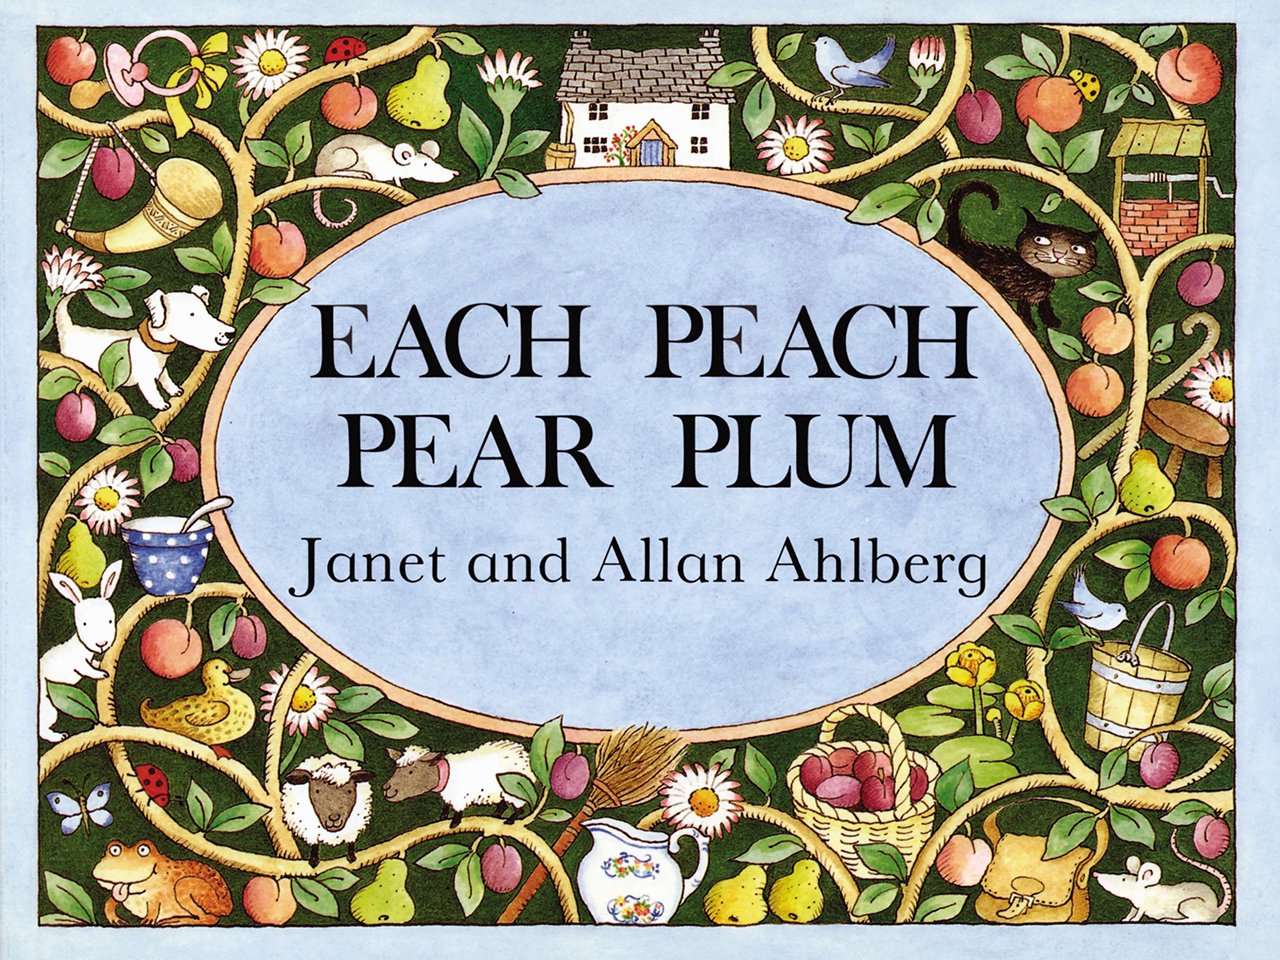 Each Peach Pear Plum by Janet and Allan Ahlberg